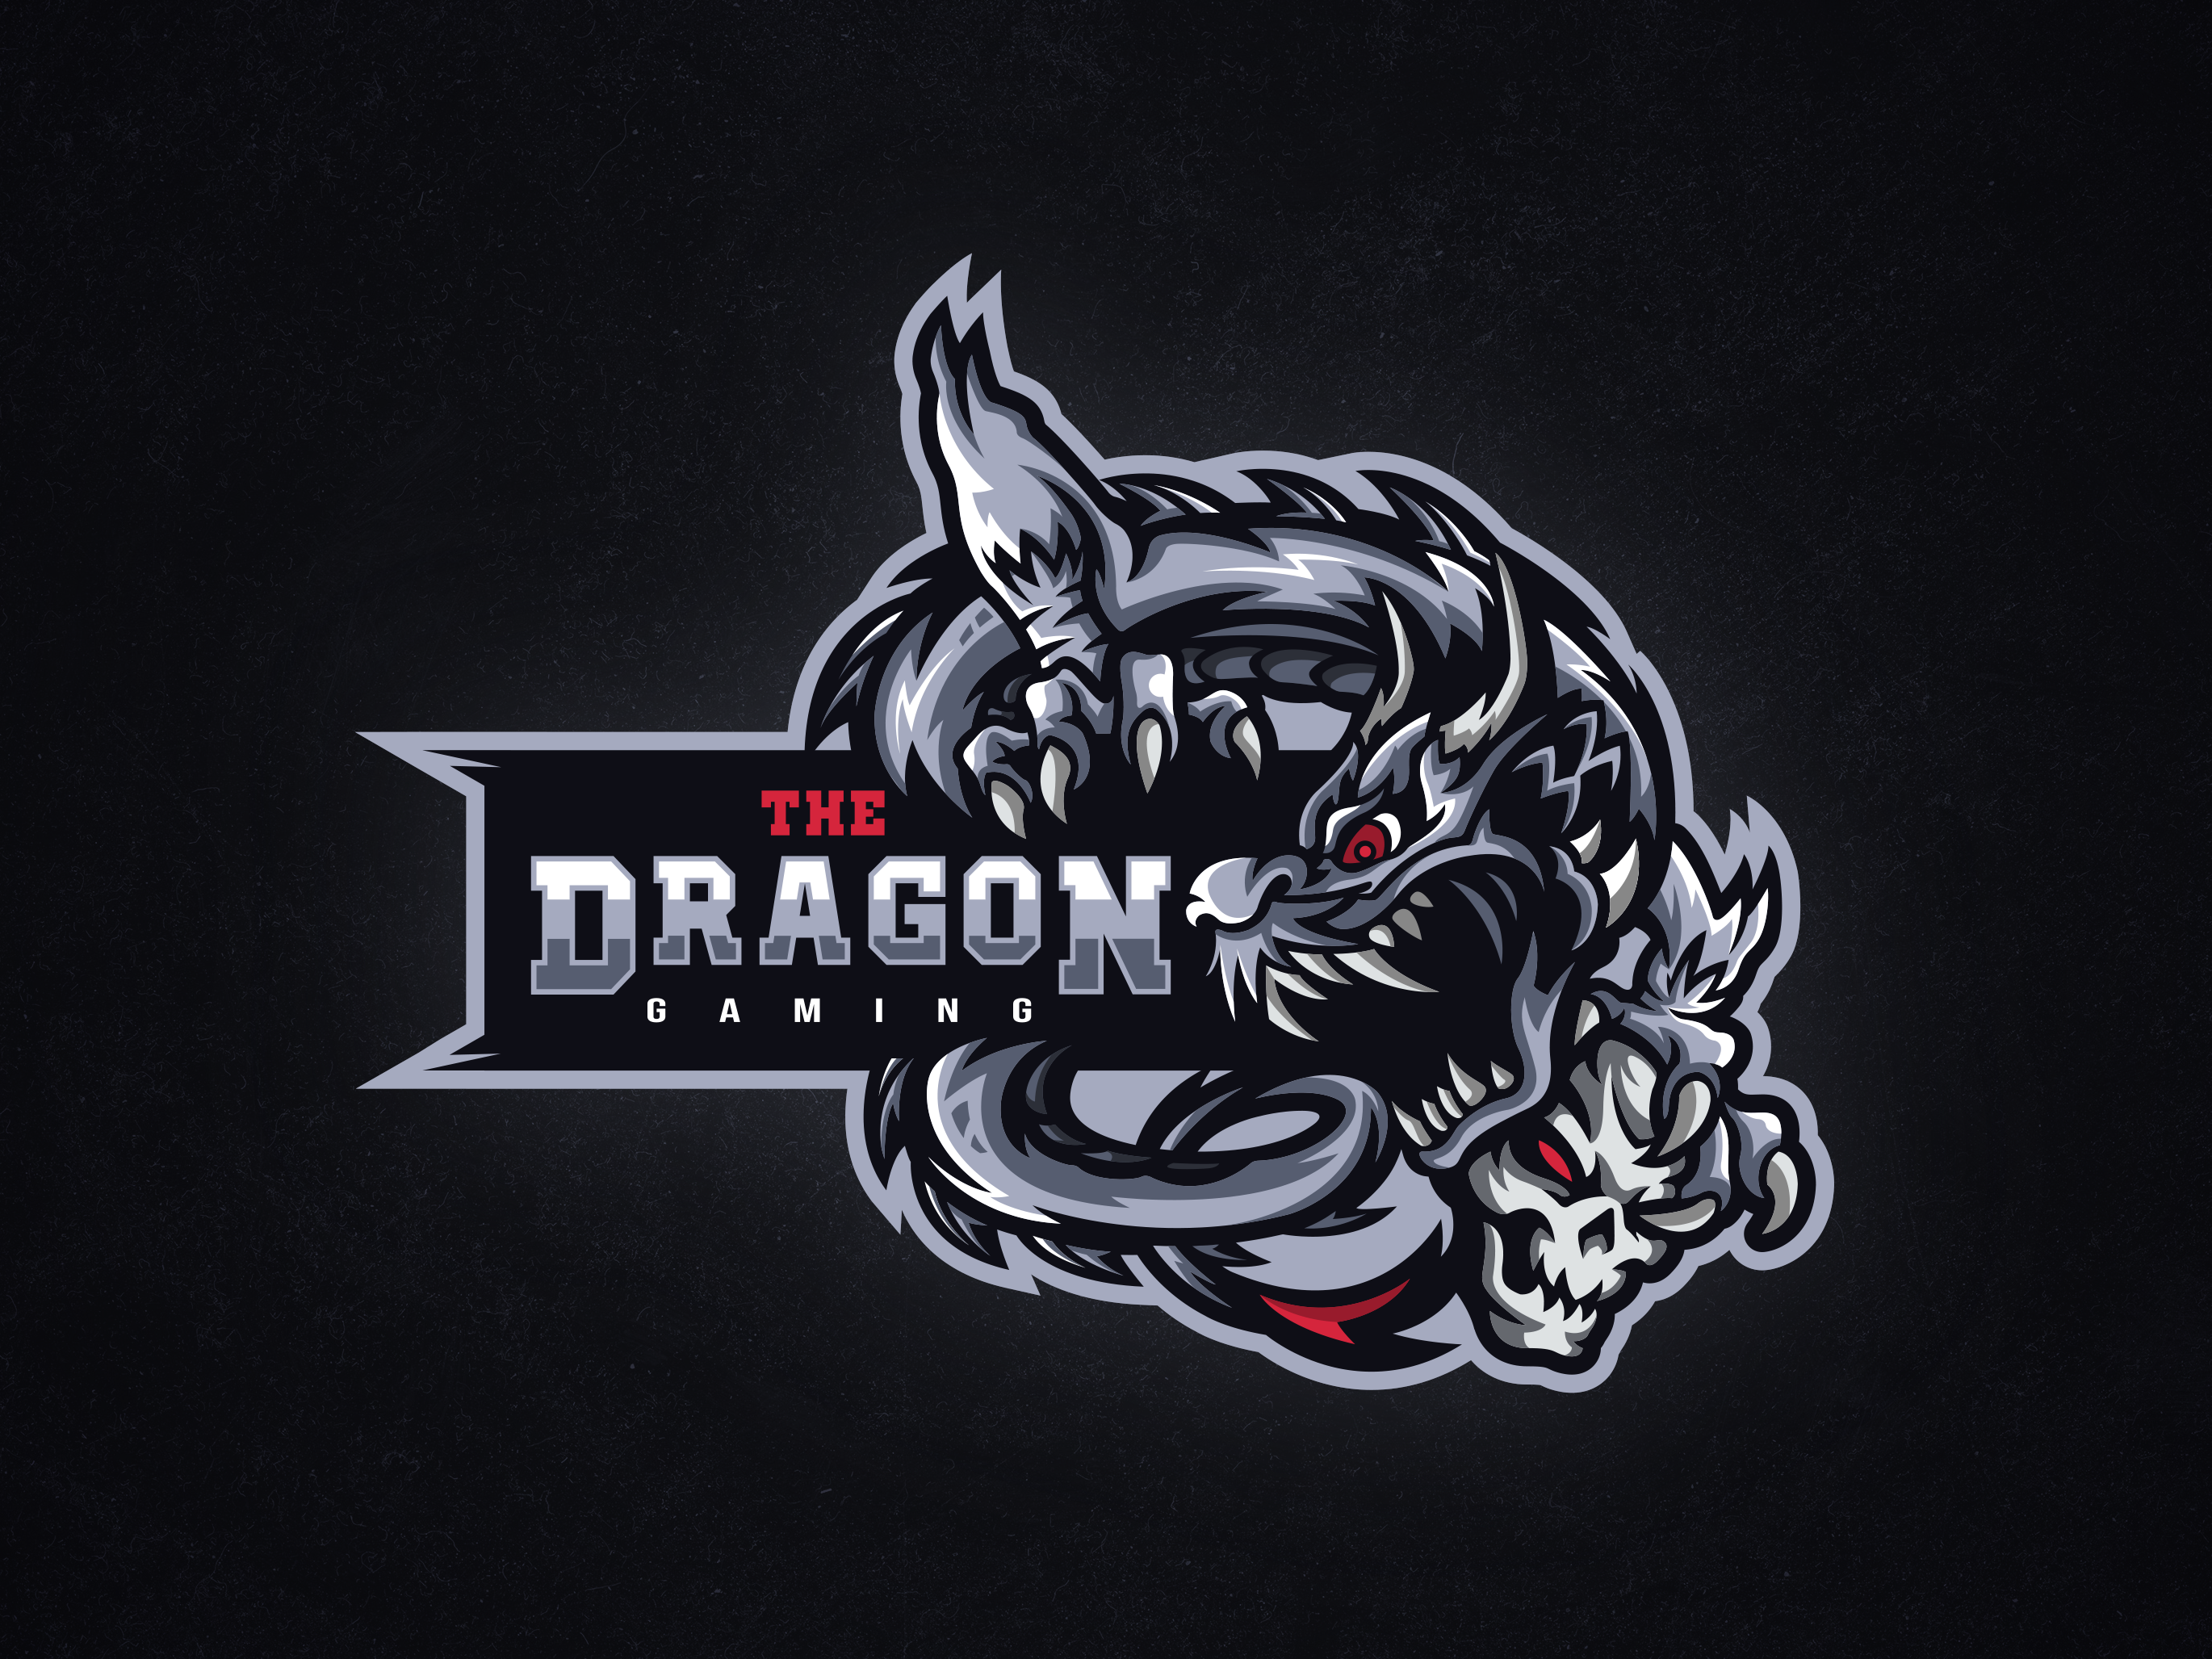 Logo này sẽ giúp Dragon Gaming tạo nên sự tương tác với người chơi và làm cho game của họ trở nên đặc biệt hơn. Hãy cùng xem logo mới này và cảm nhận sự tinh tế của Dragon Gaming.